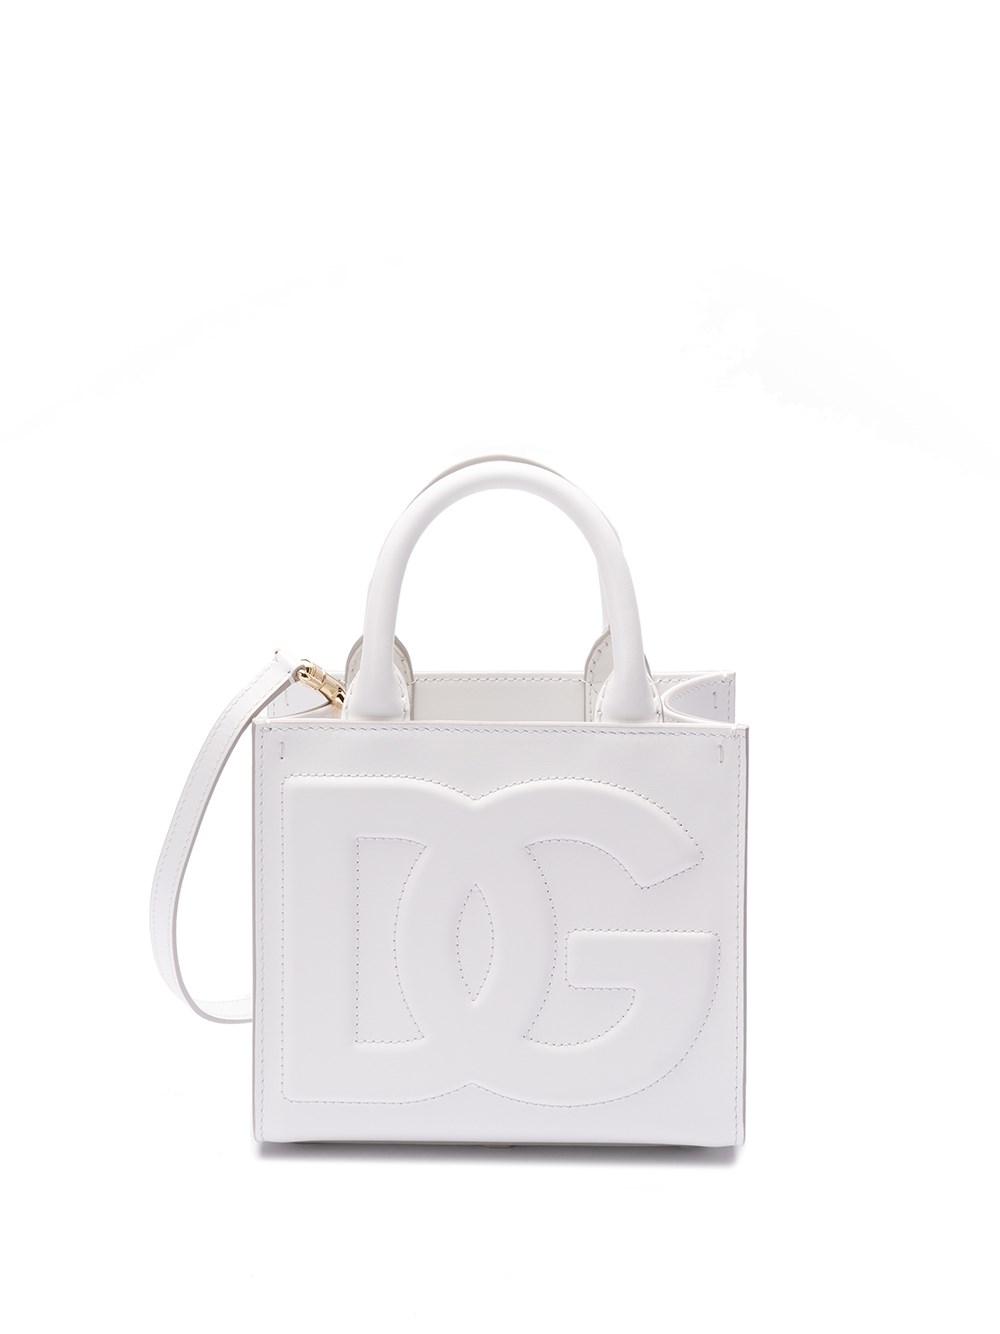 Dolce & Gabbana Shopping Bag In White